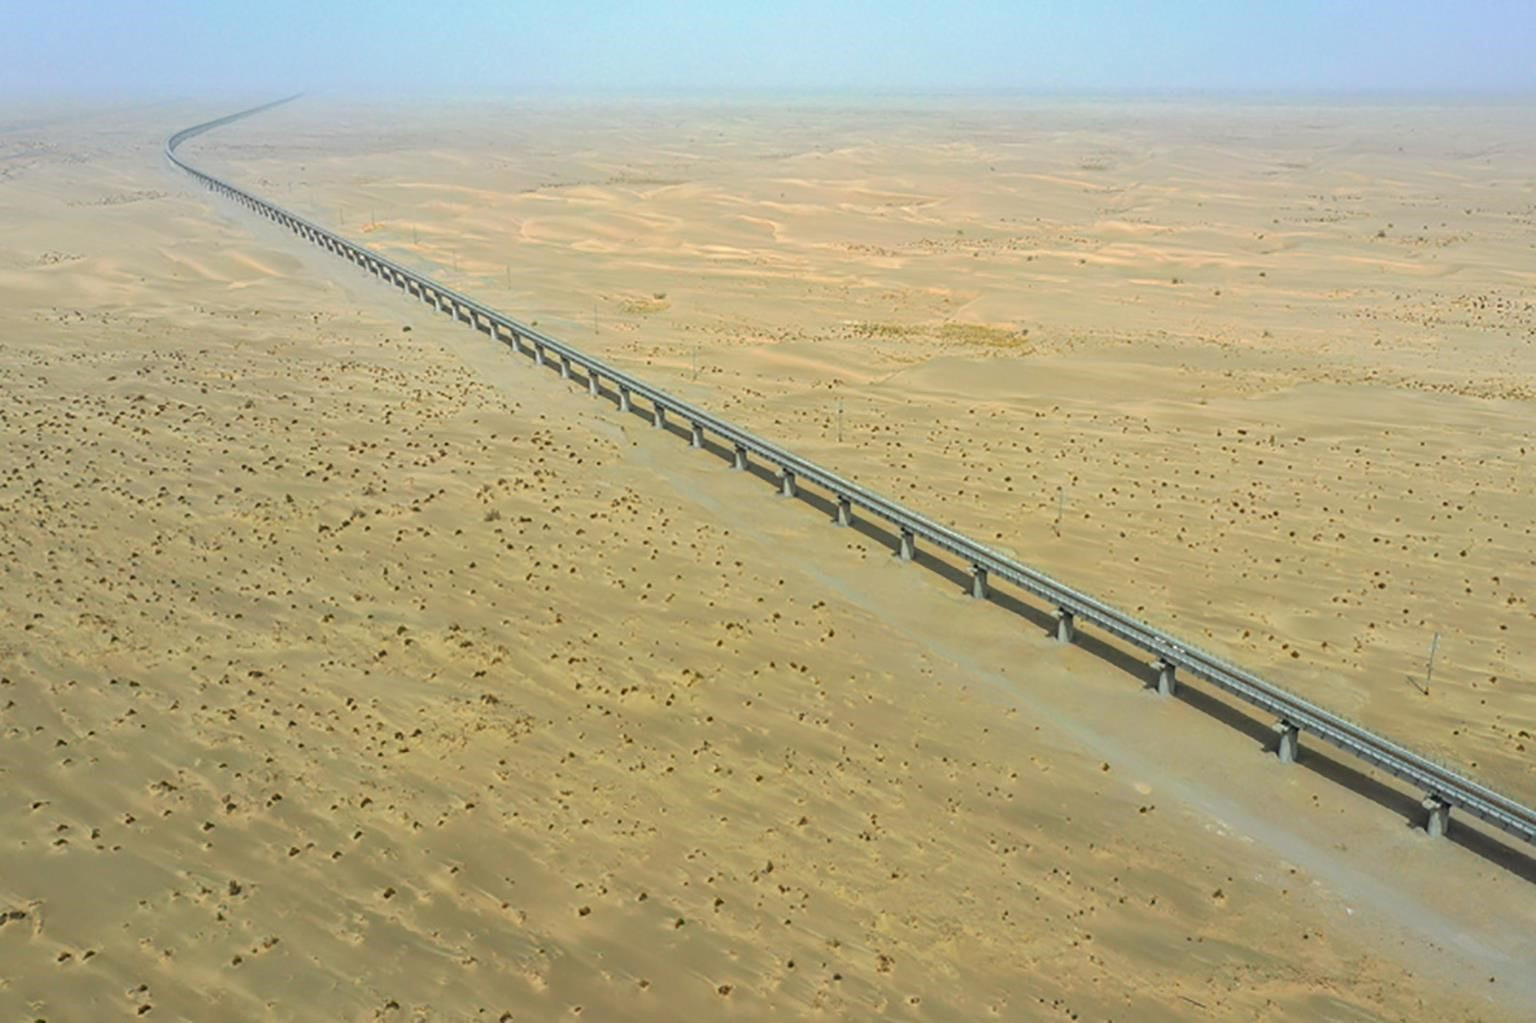 Xây đường sắt chạy xuyên sa mạc, Trung Quốc tiếp tục đạt được những thành tựu "khủng" về cơ sở hạ tầng - Ảnh 2.